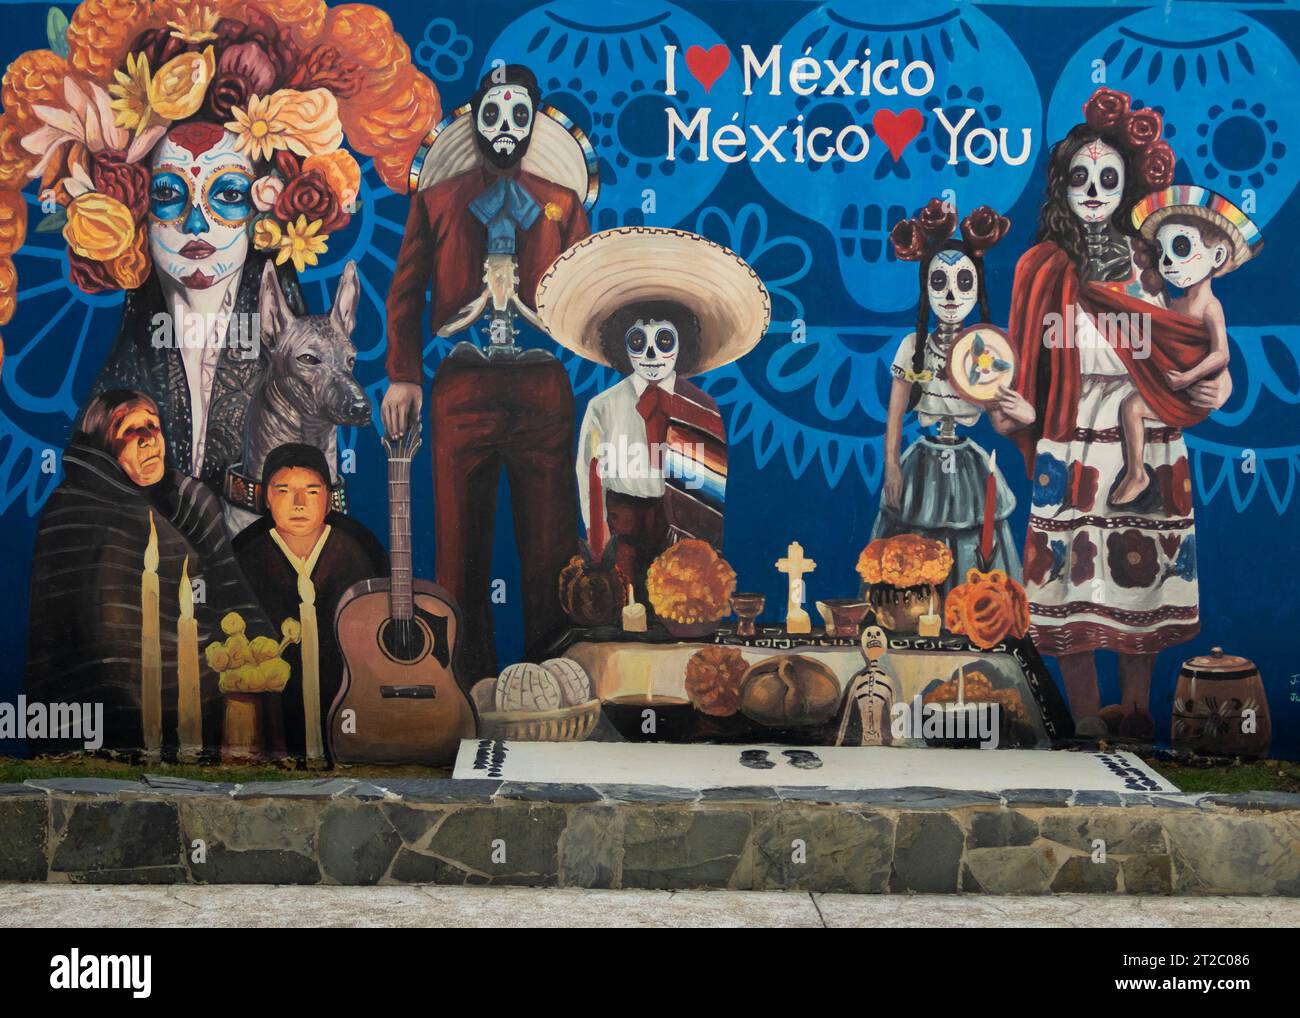 Messico, ti amo, pittura murale, giorno dei morti, murales, muralismo messicano, progetto artistico, Rivoluzione messicana, identificatori culturali, arte di strada, raffigurazione. Foto Stock